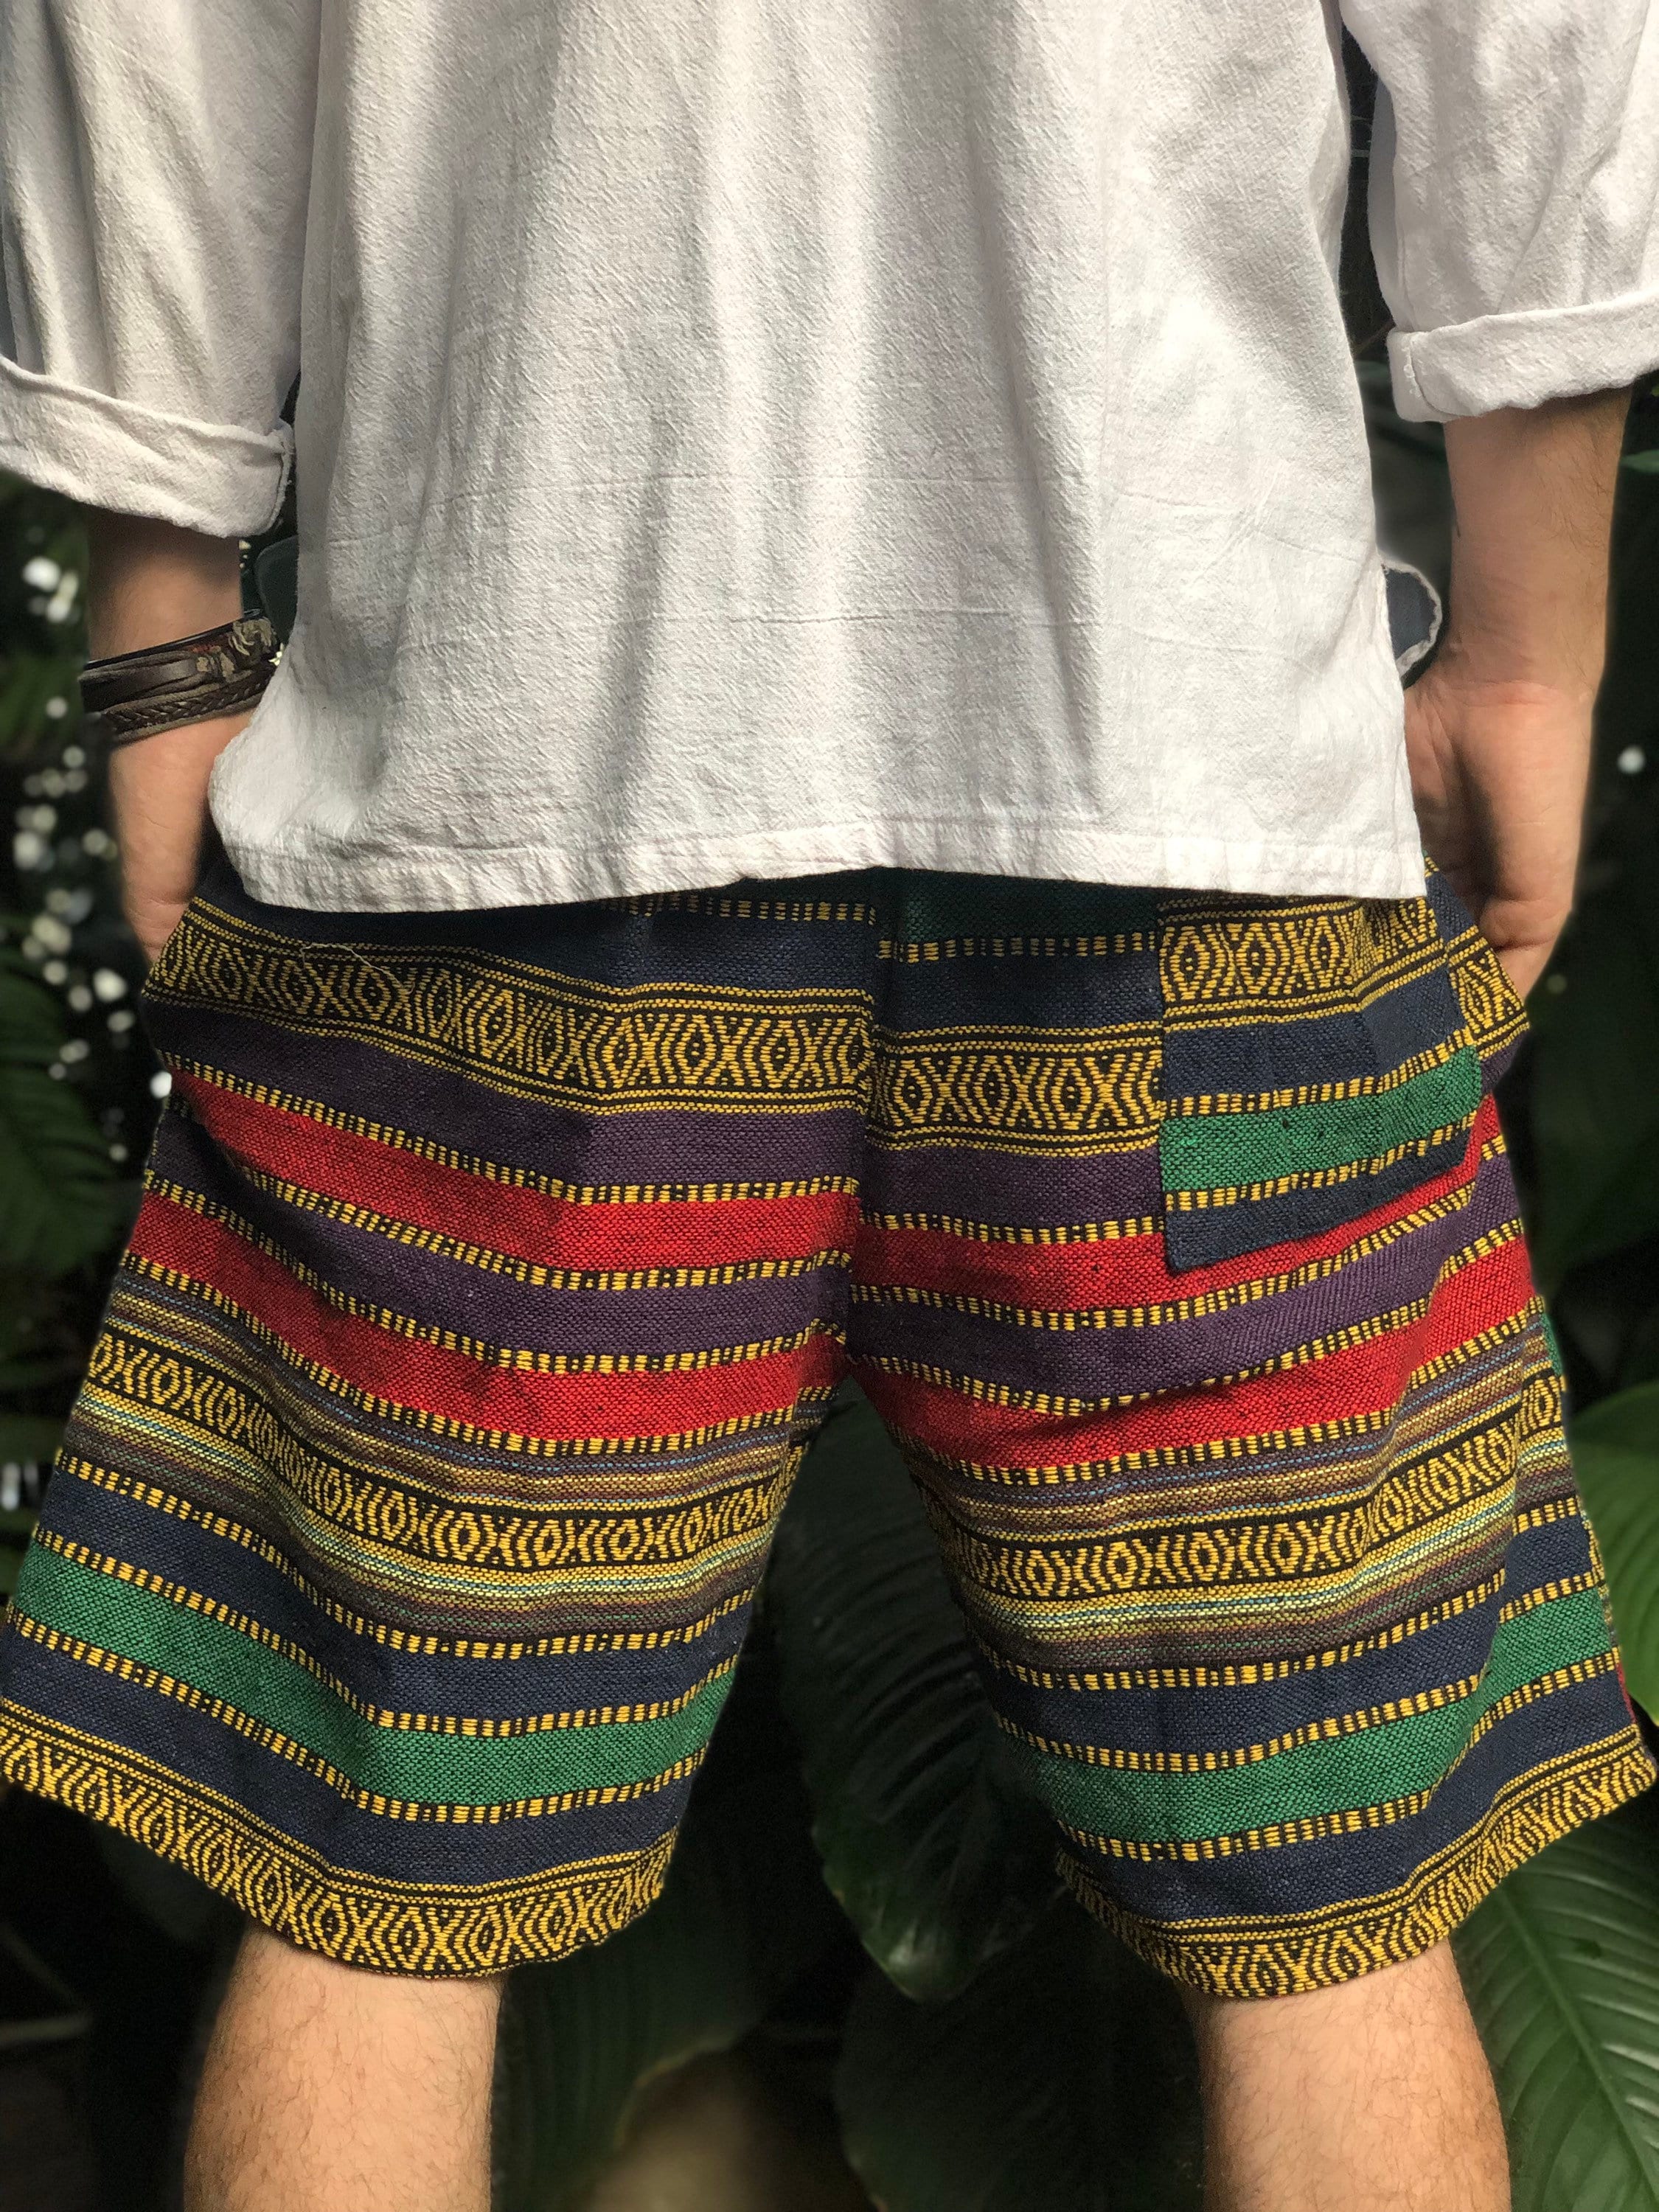 Cotton Baja Shorts Aztec Geo Hippie Boho festival Men Ethnic | Etsy